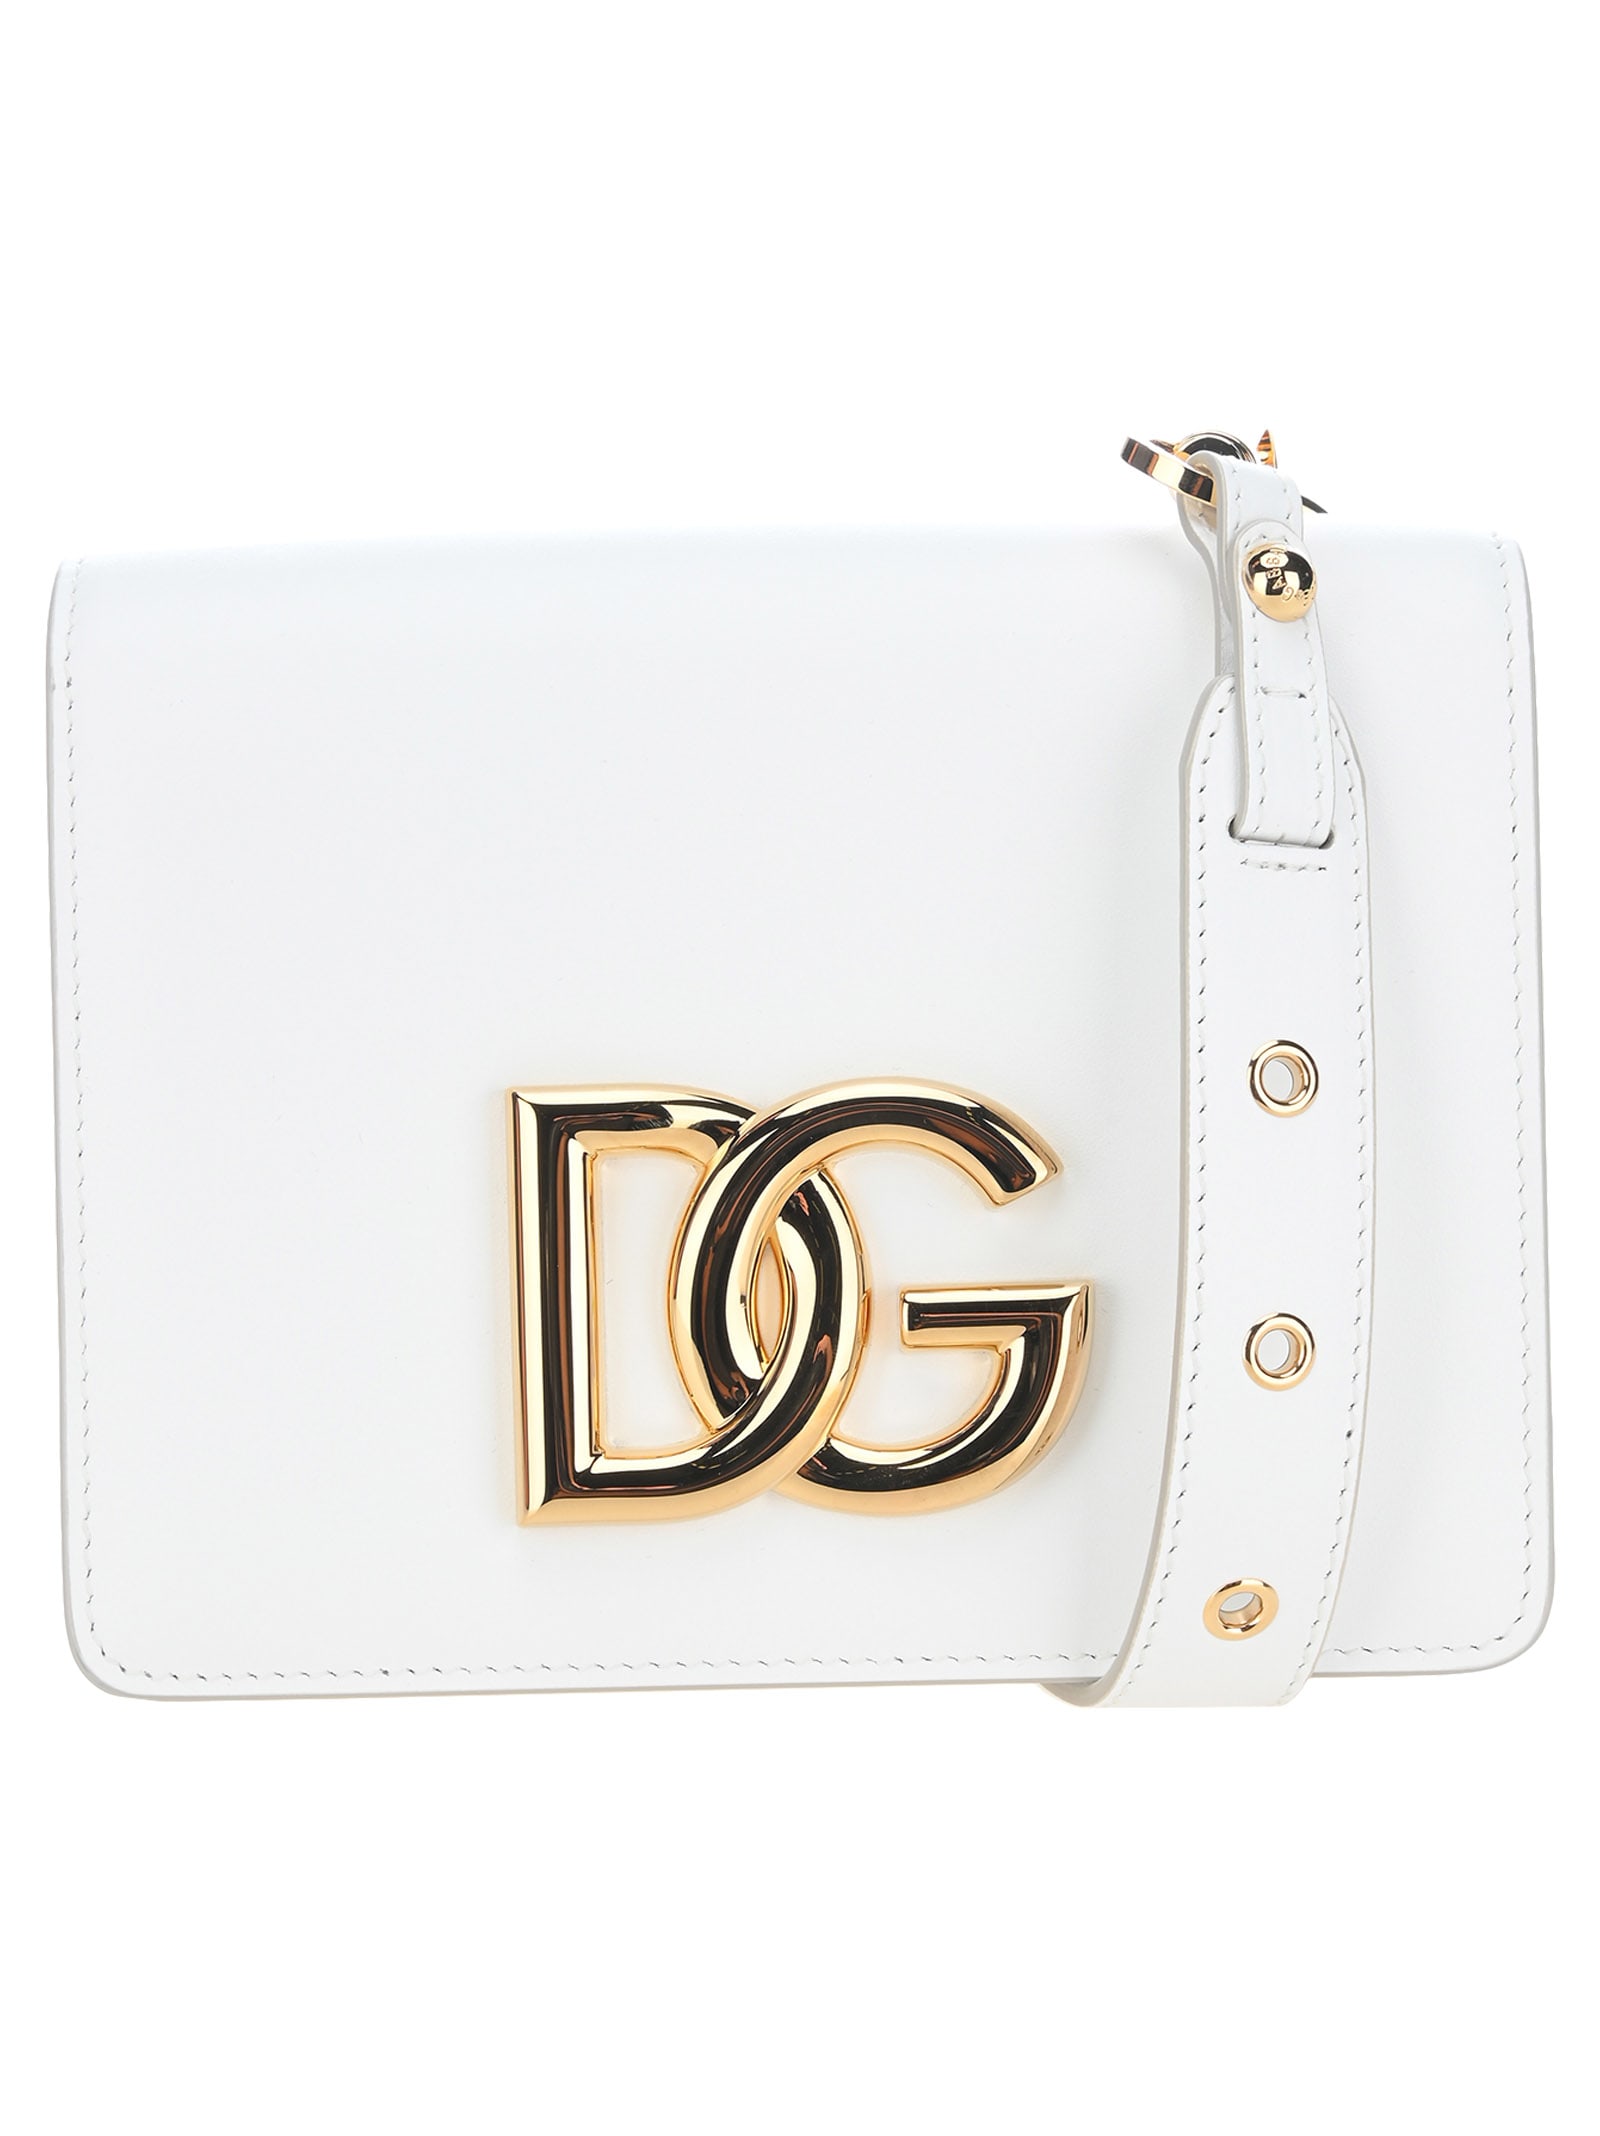 Dolce & Gabbana Dolce & gabbana Calfskin Crossbody 3.5 Bag